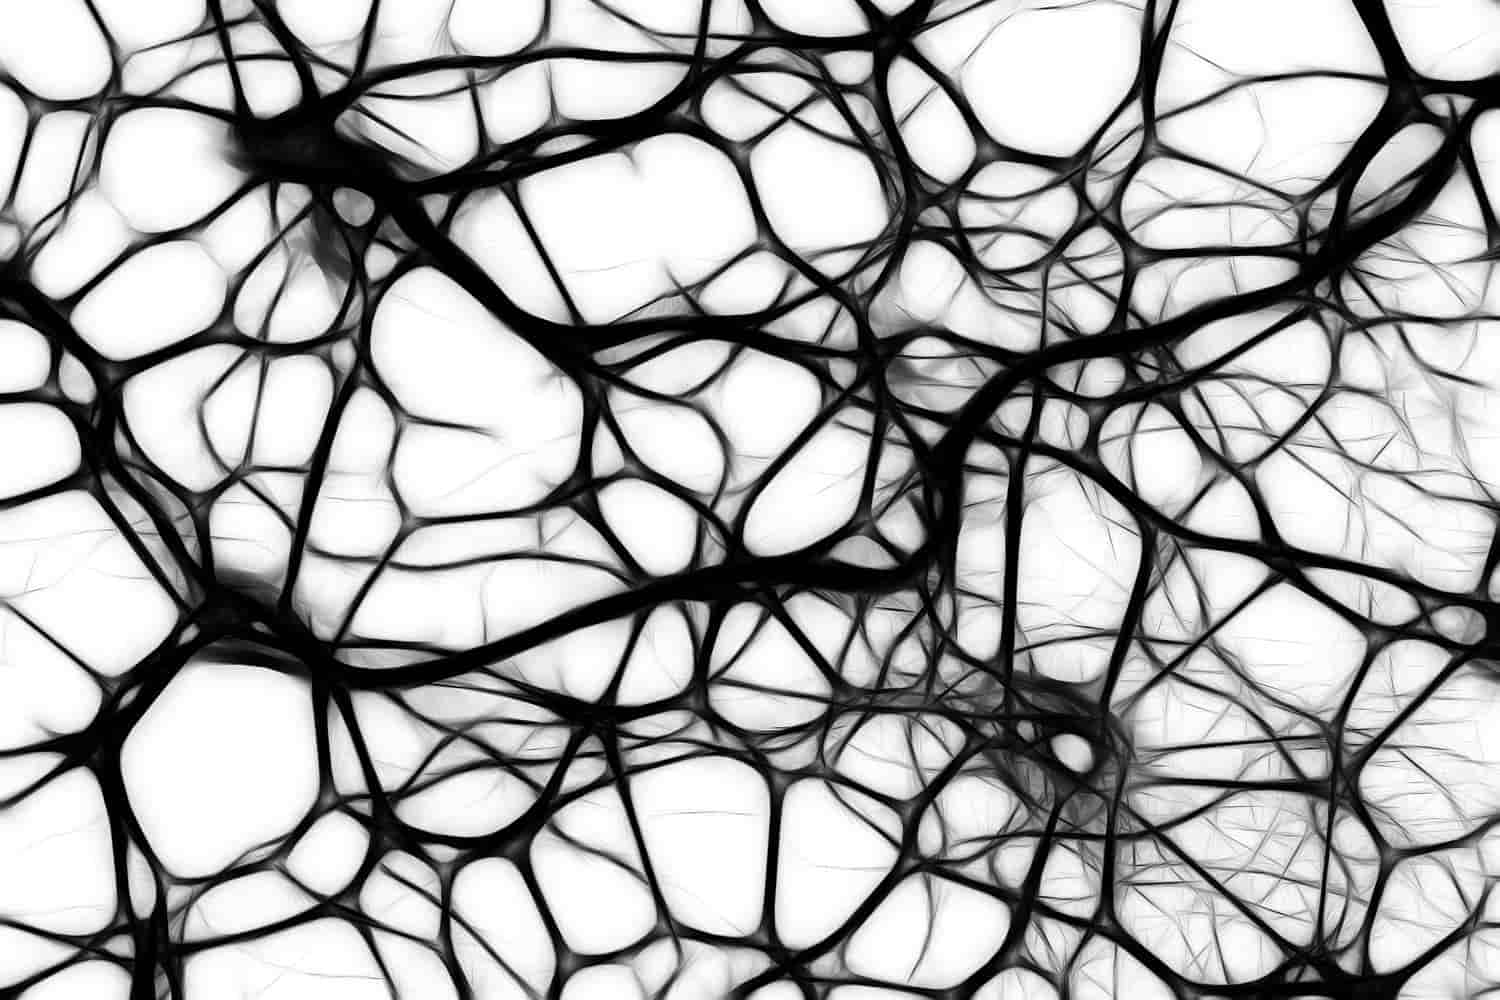 Las neuronas tienen un papel muy importante en el sistema nervioso